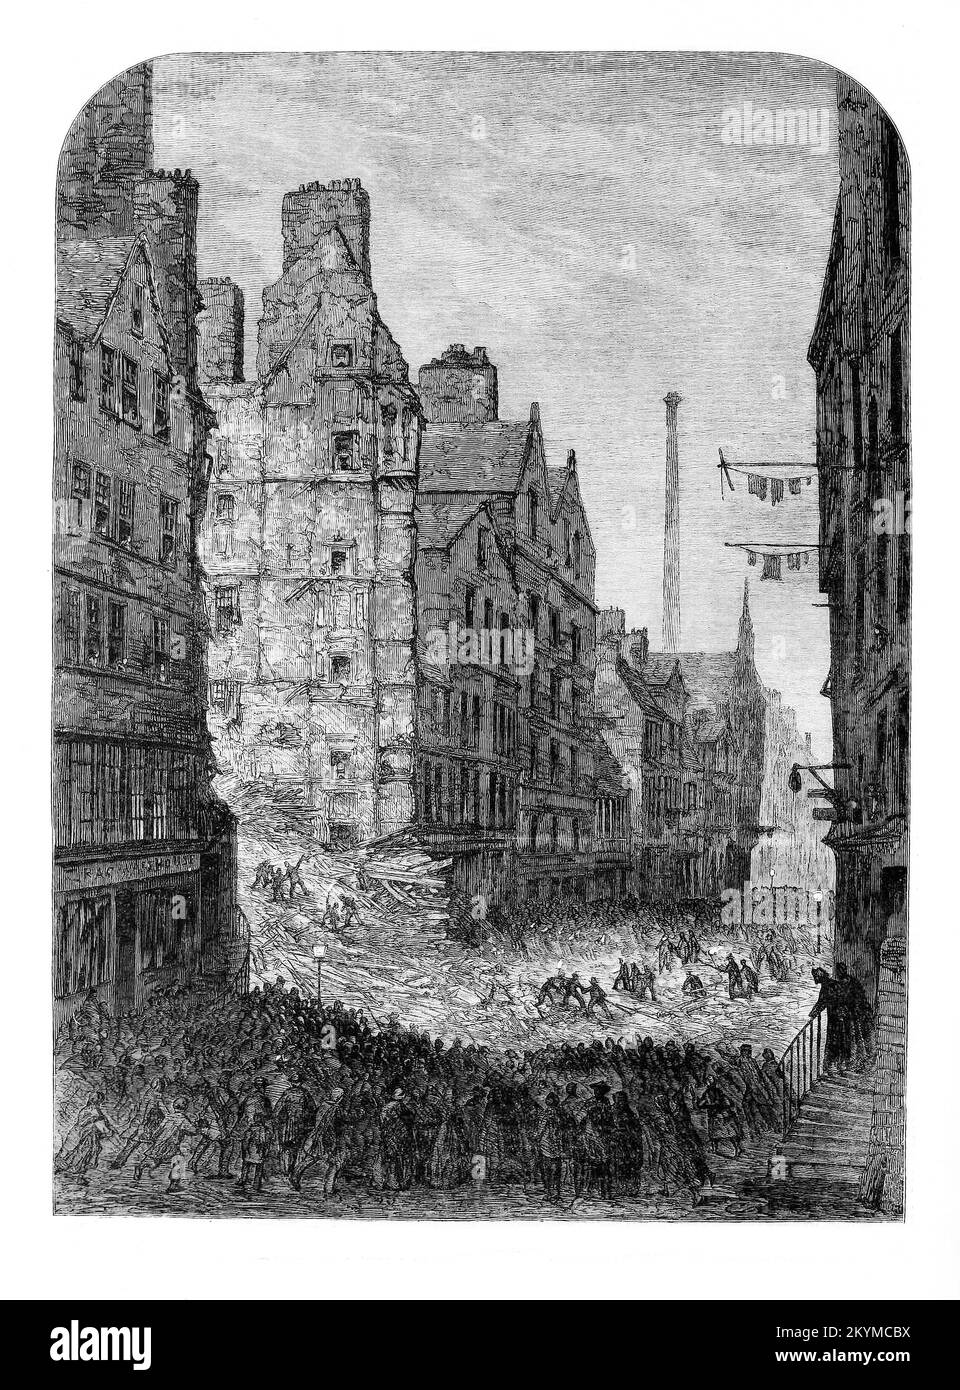 L'effondrement d'un règlement d'Édimbourg avec perte de vie en novembre 1861. De 77 occupants, 35 ont péri ou sont morts à l'hôpital de leurs blessures. Cet édifice de sept étages vieux de 250 ans comprenait principalement du bois, qui renversait cette nuit fatidique, était situé au cœur de la vieille ville densément peuplée d’Édimbourg, sur le côté nord de High Street.la City Improvement Act a été adoptée en 1867, Et à la fin du 19th siècle, une grande partie du logement médiéval de la vieille ville avait disparu. Banque D'Images